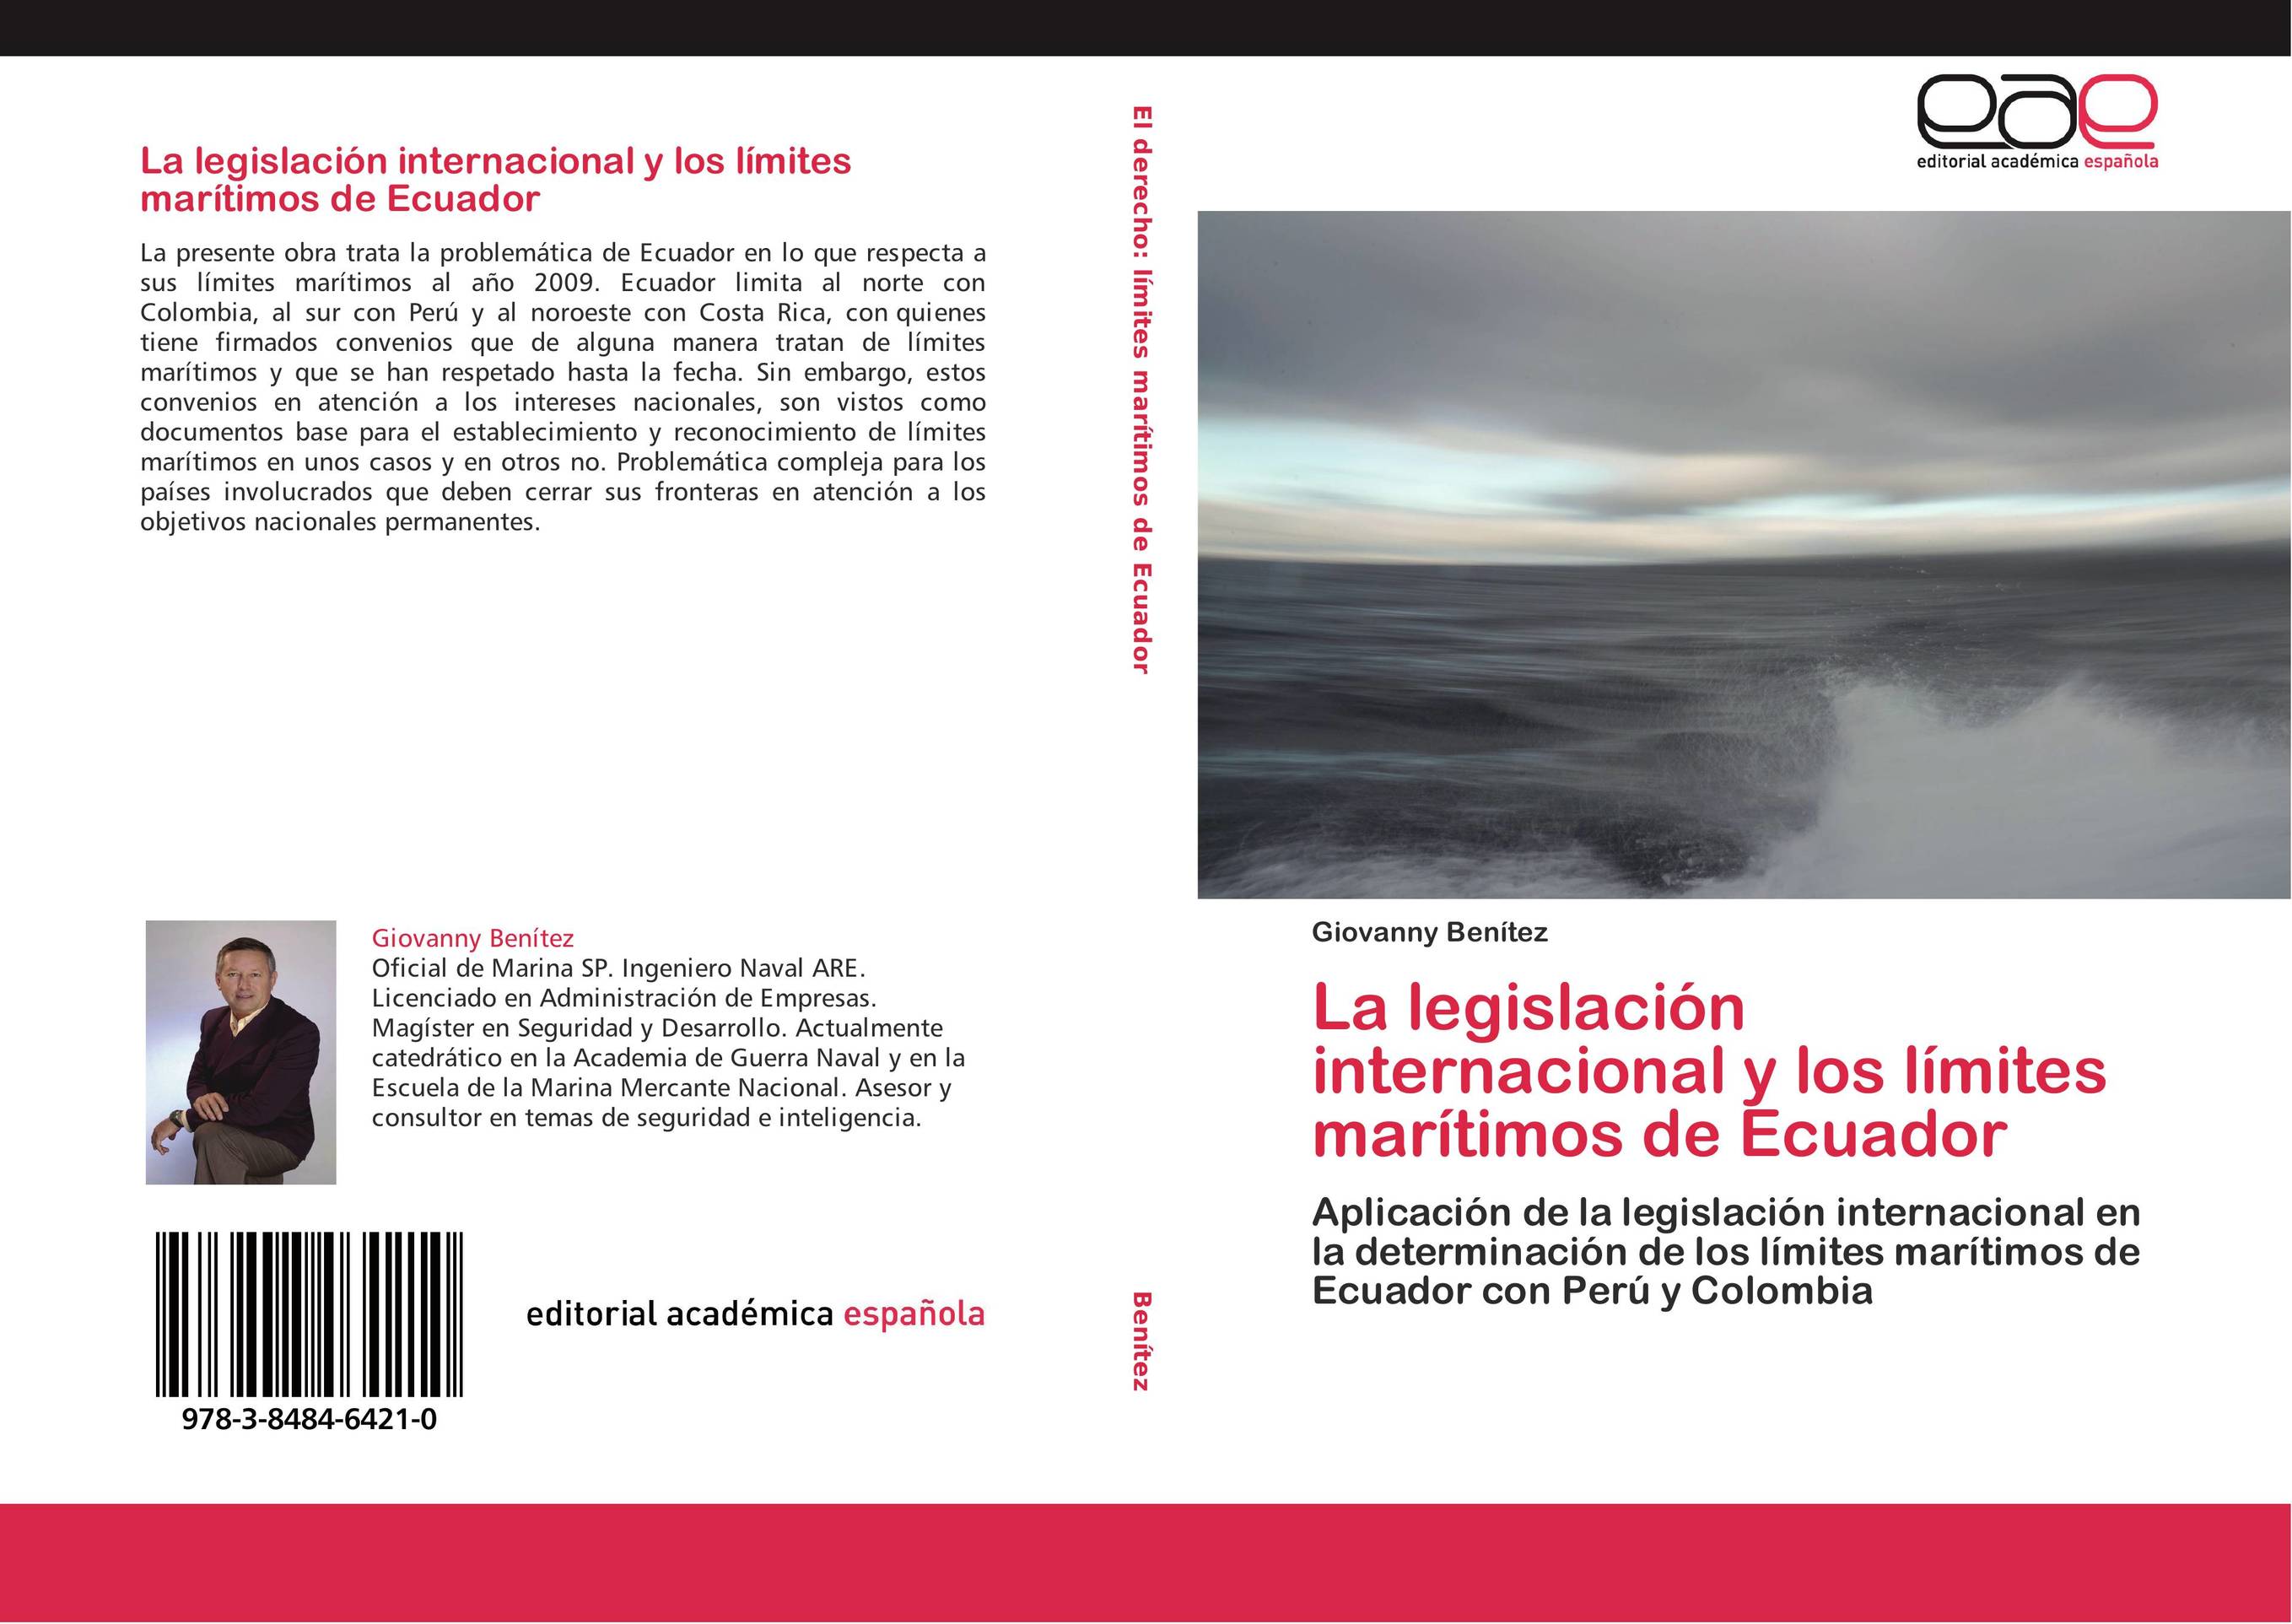 La legislación internacional y los límites marítimos de Ecuador